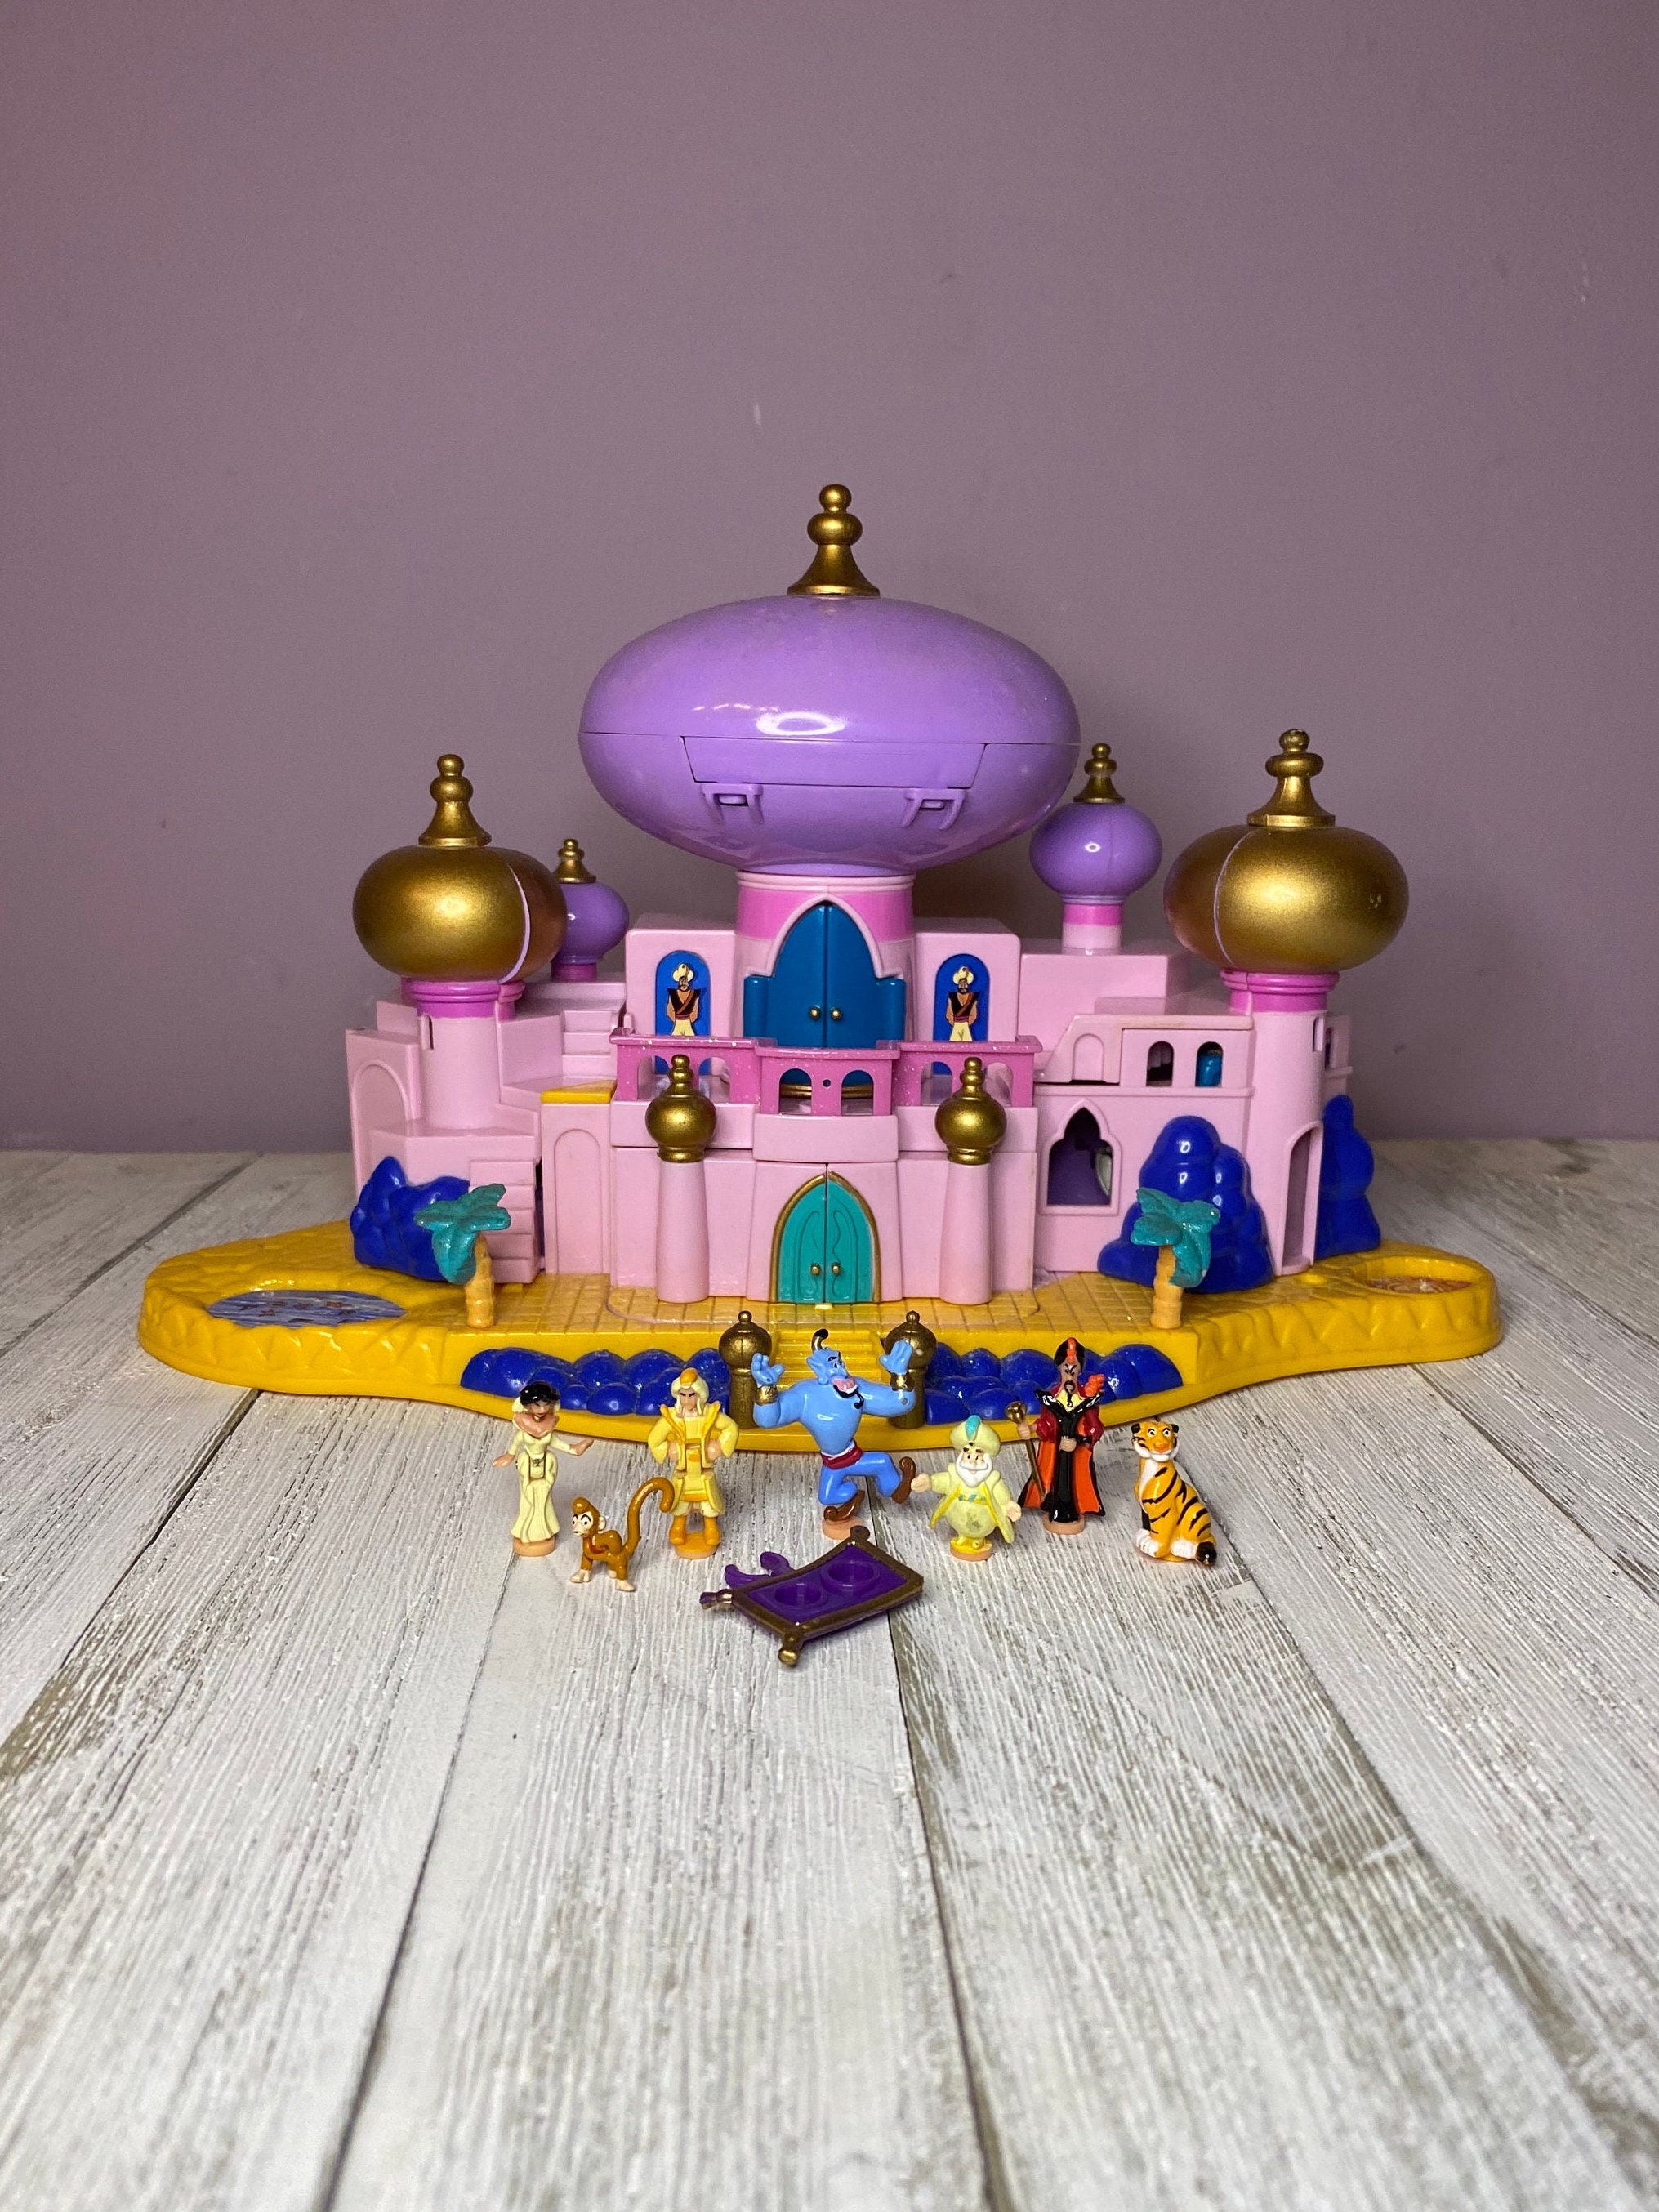 Polly Pocket Cinderella's Pink Disney Enchanted Castle Accessories  Including Horse and Carrage and Figures/ Memsartshop. 